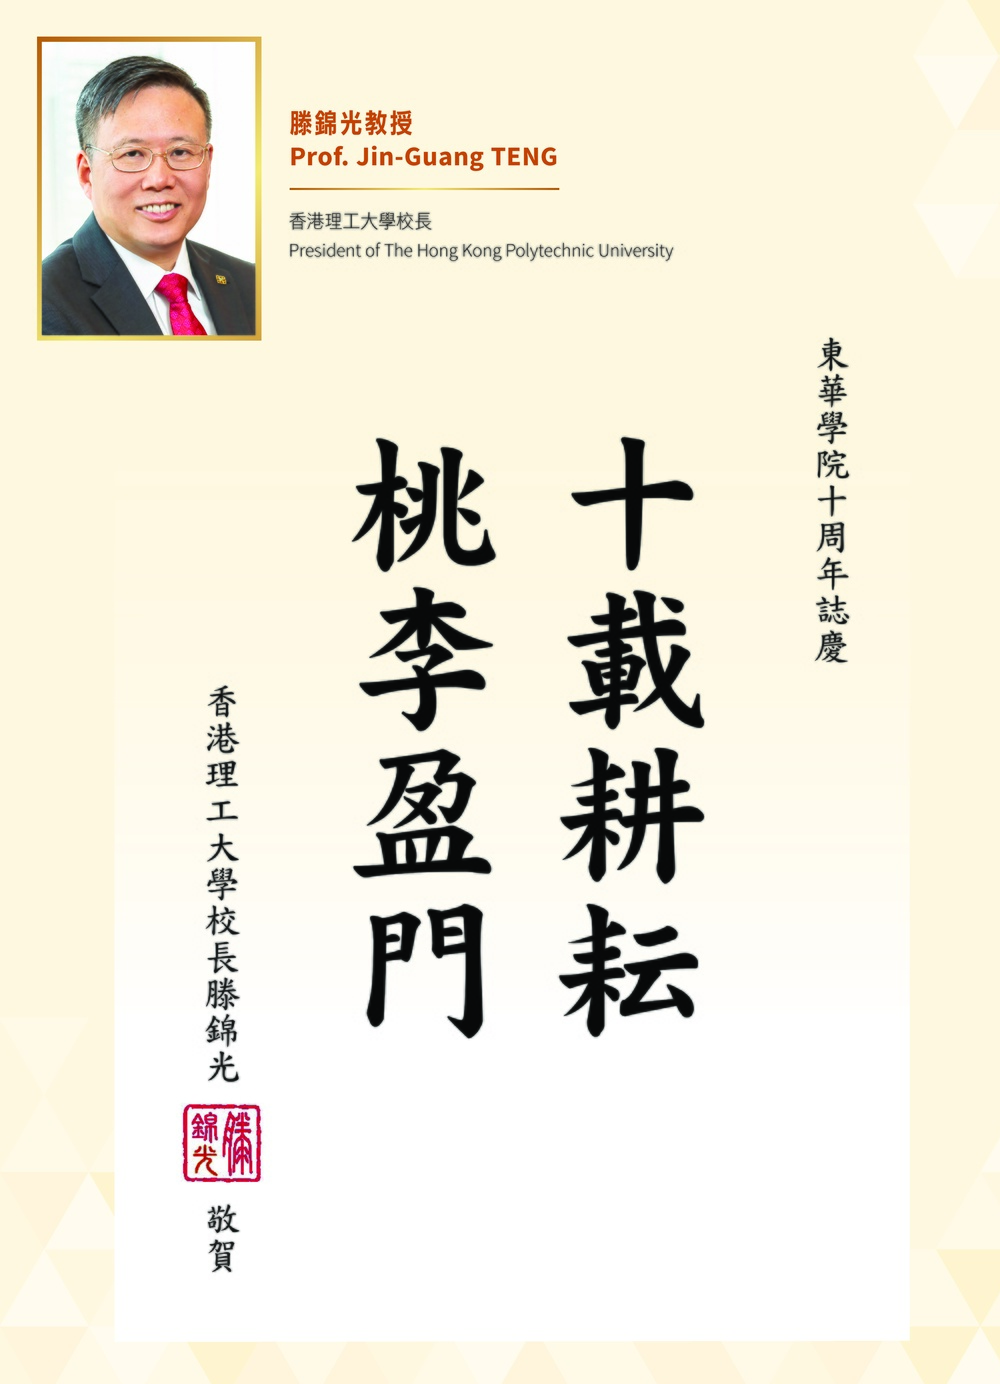 President of The Hong Kong Polytechnic University